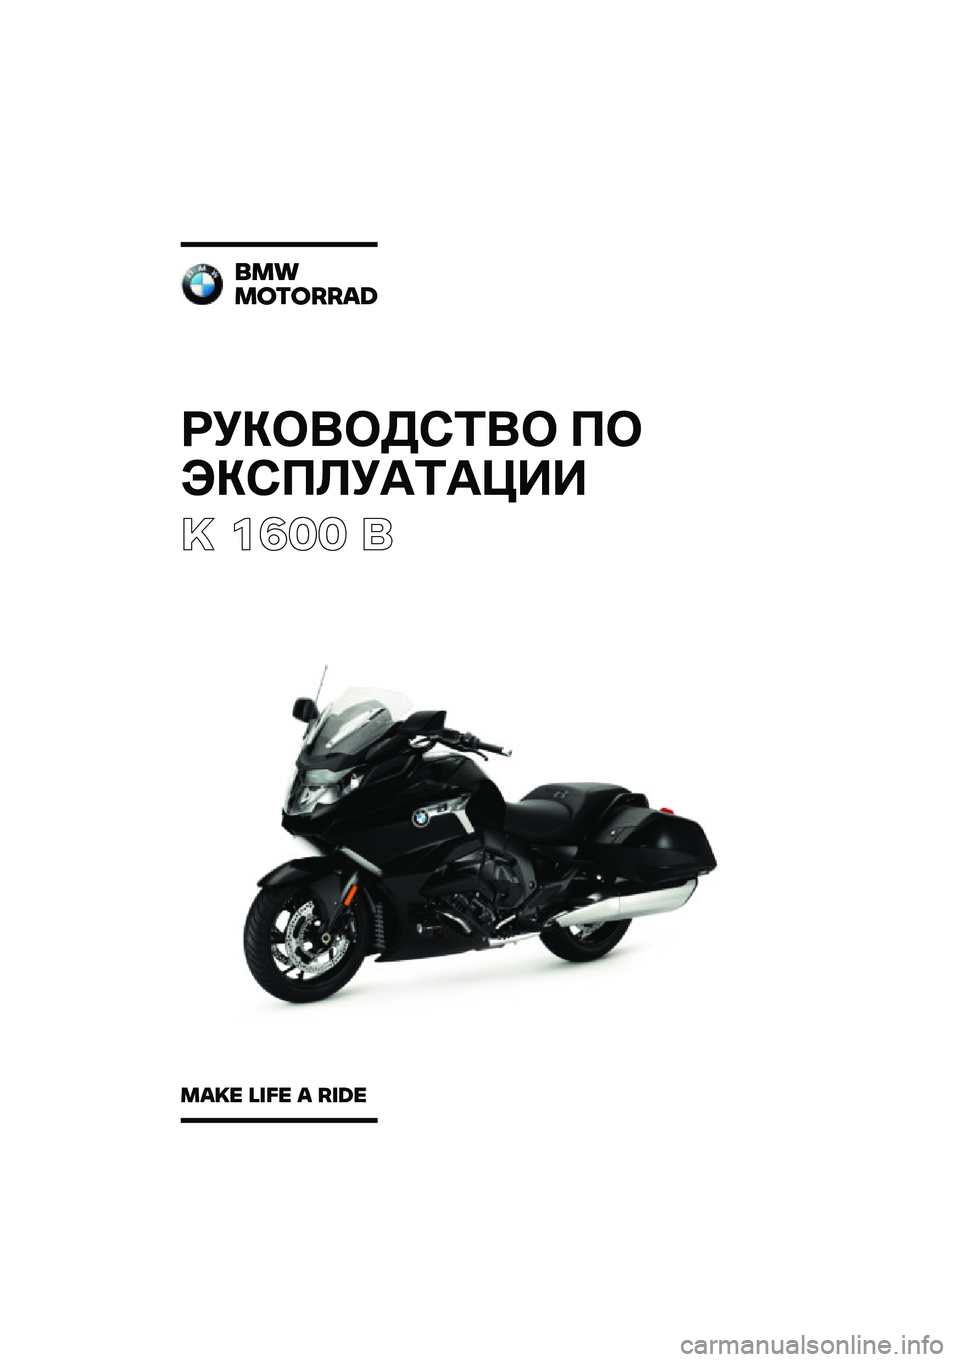 BMW MOTORRAD K 1600 B 2020  Руководство по эксплуатации (in Russian) ���������	��
 �
� 
����
�
���	����
�  ����  �	 ���
��������	
���
� ��
�� � ��
�	� 